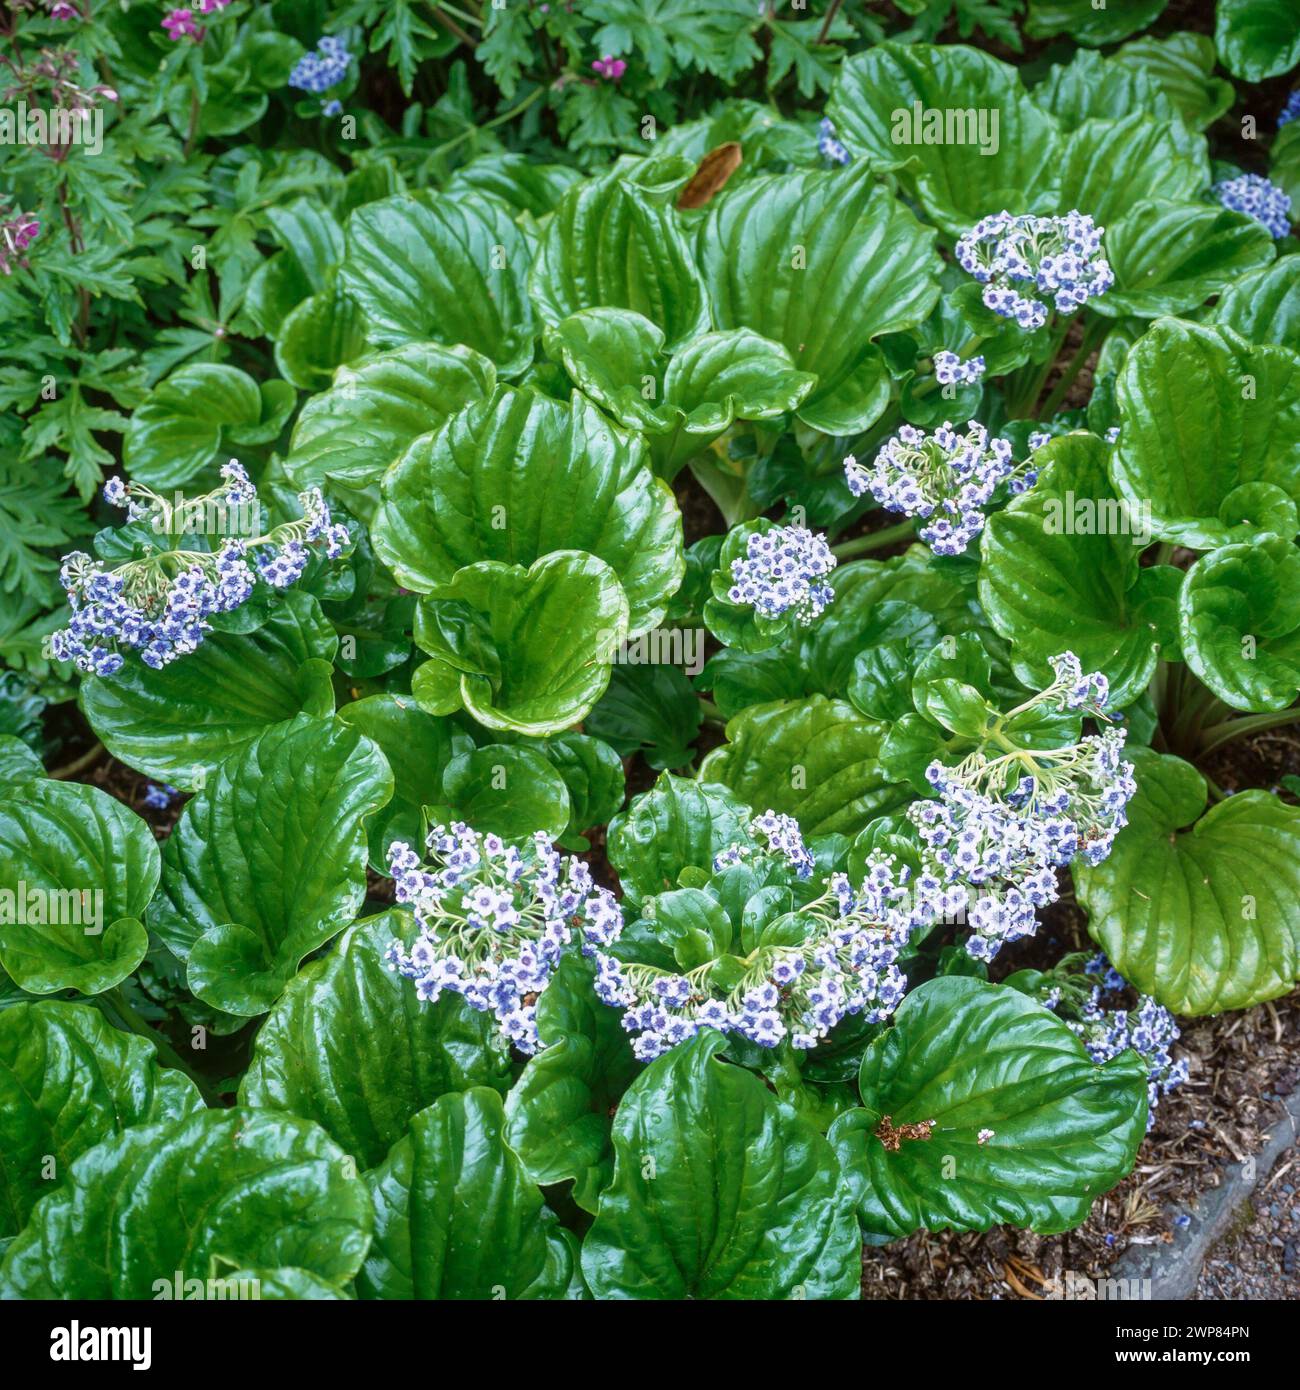 Grüne Blätter und winzige blaue Blüten der Myosotidium hortensia Chatham Island Vergissmeint-Not-Pflanze, die im englischen Garten, England, Großbritannien, wächst Stockfoto